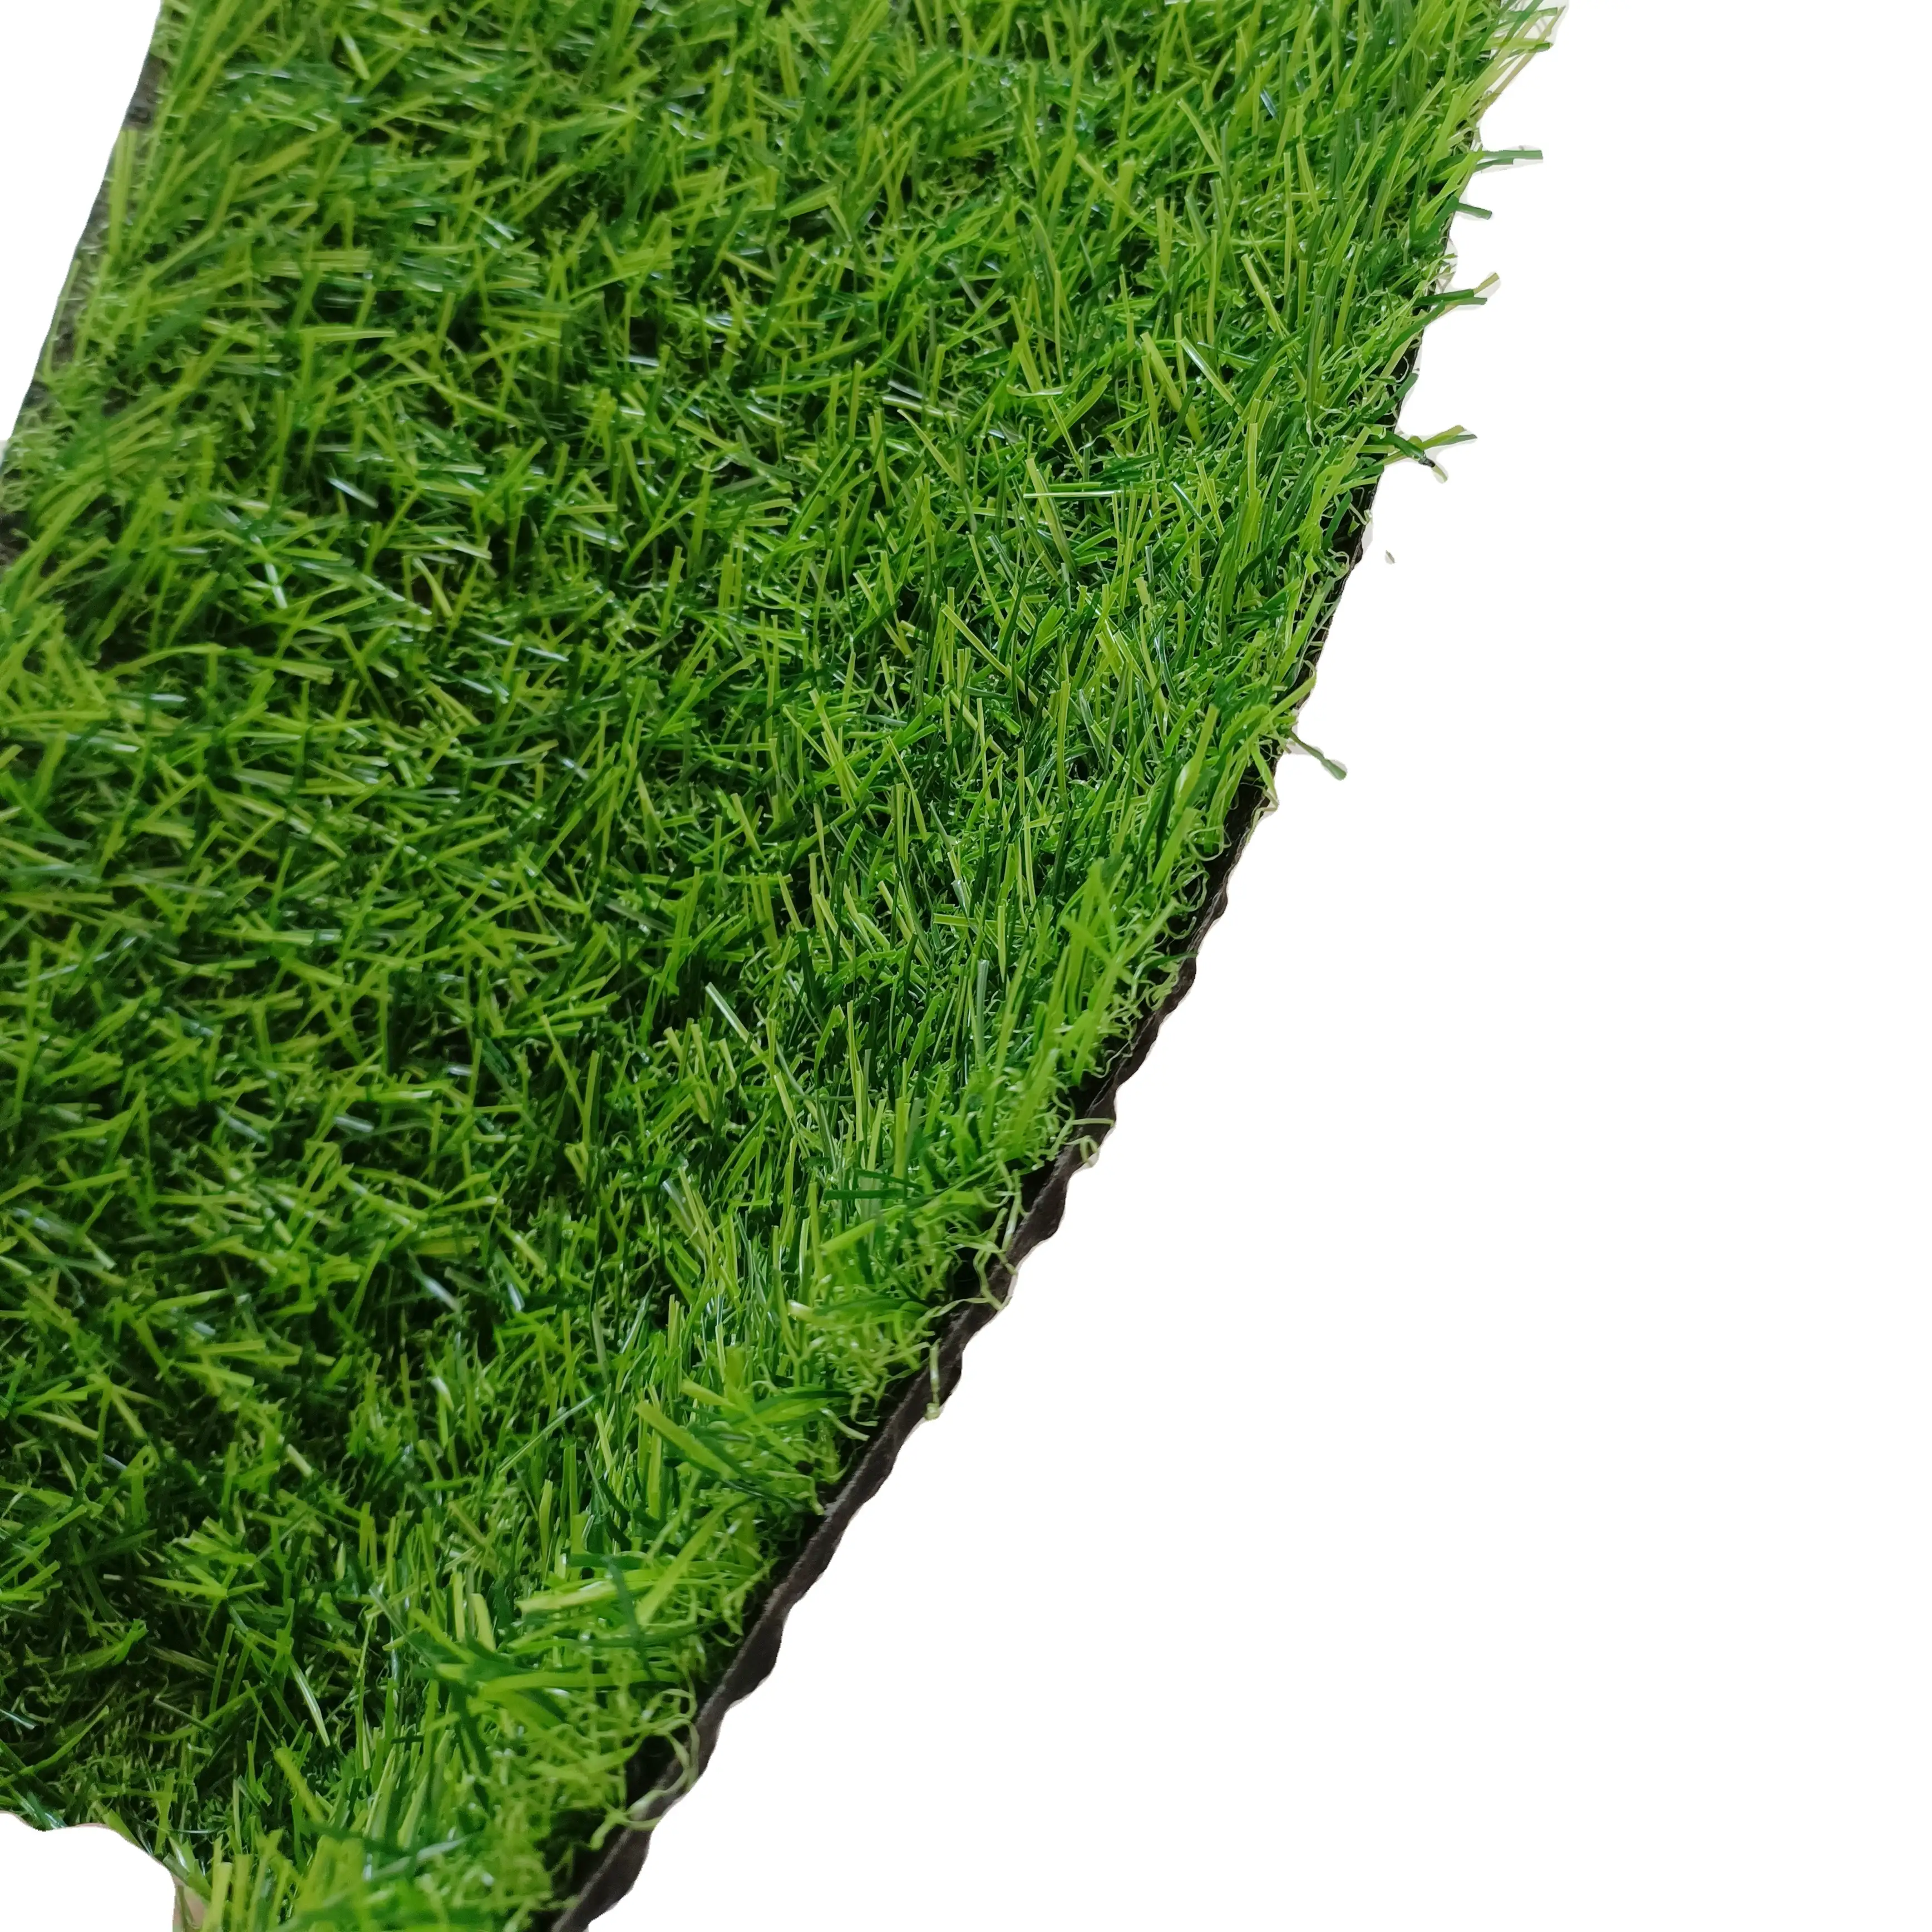 Tappeti di paesaggio verde erba sintetica riciclata all'ingrosso in erba sintetica di bufalo